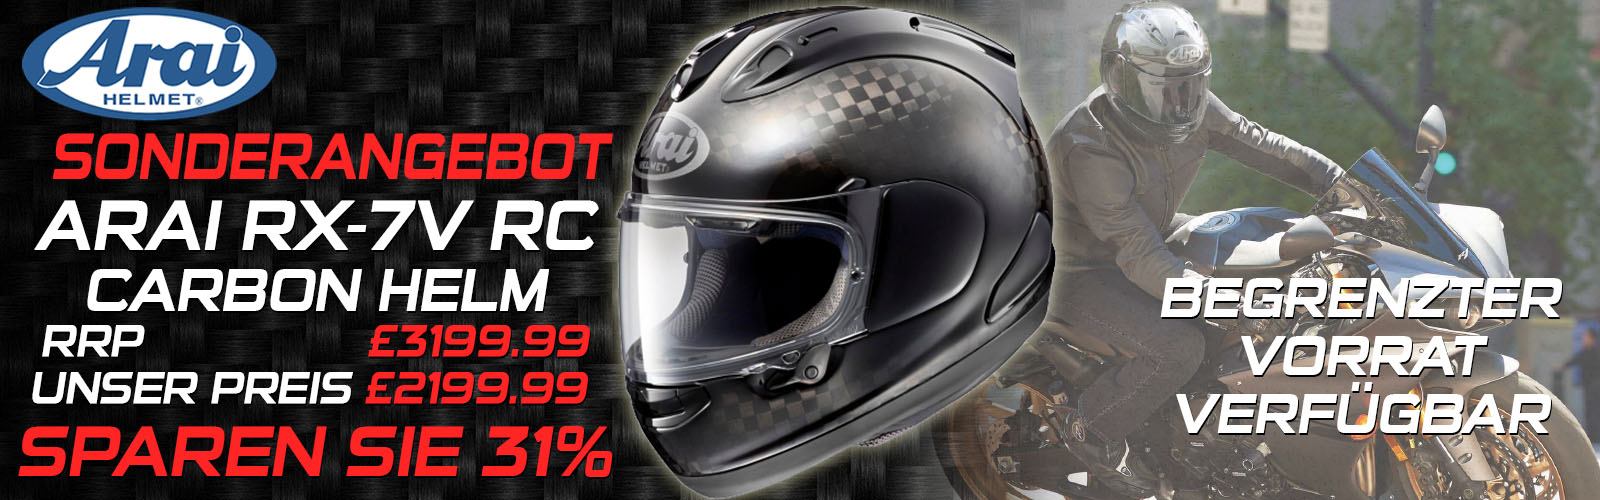 Arai RX-7V RC Carbon Helmet Special